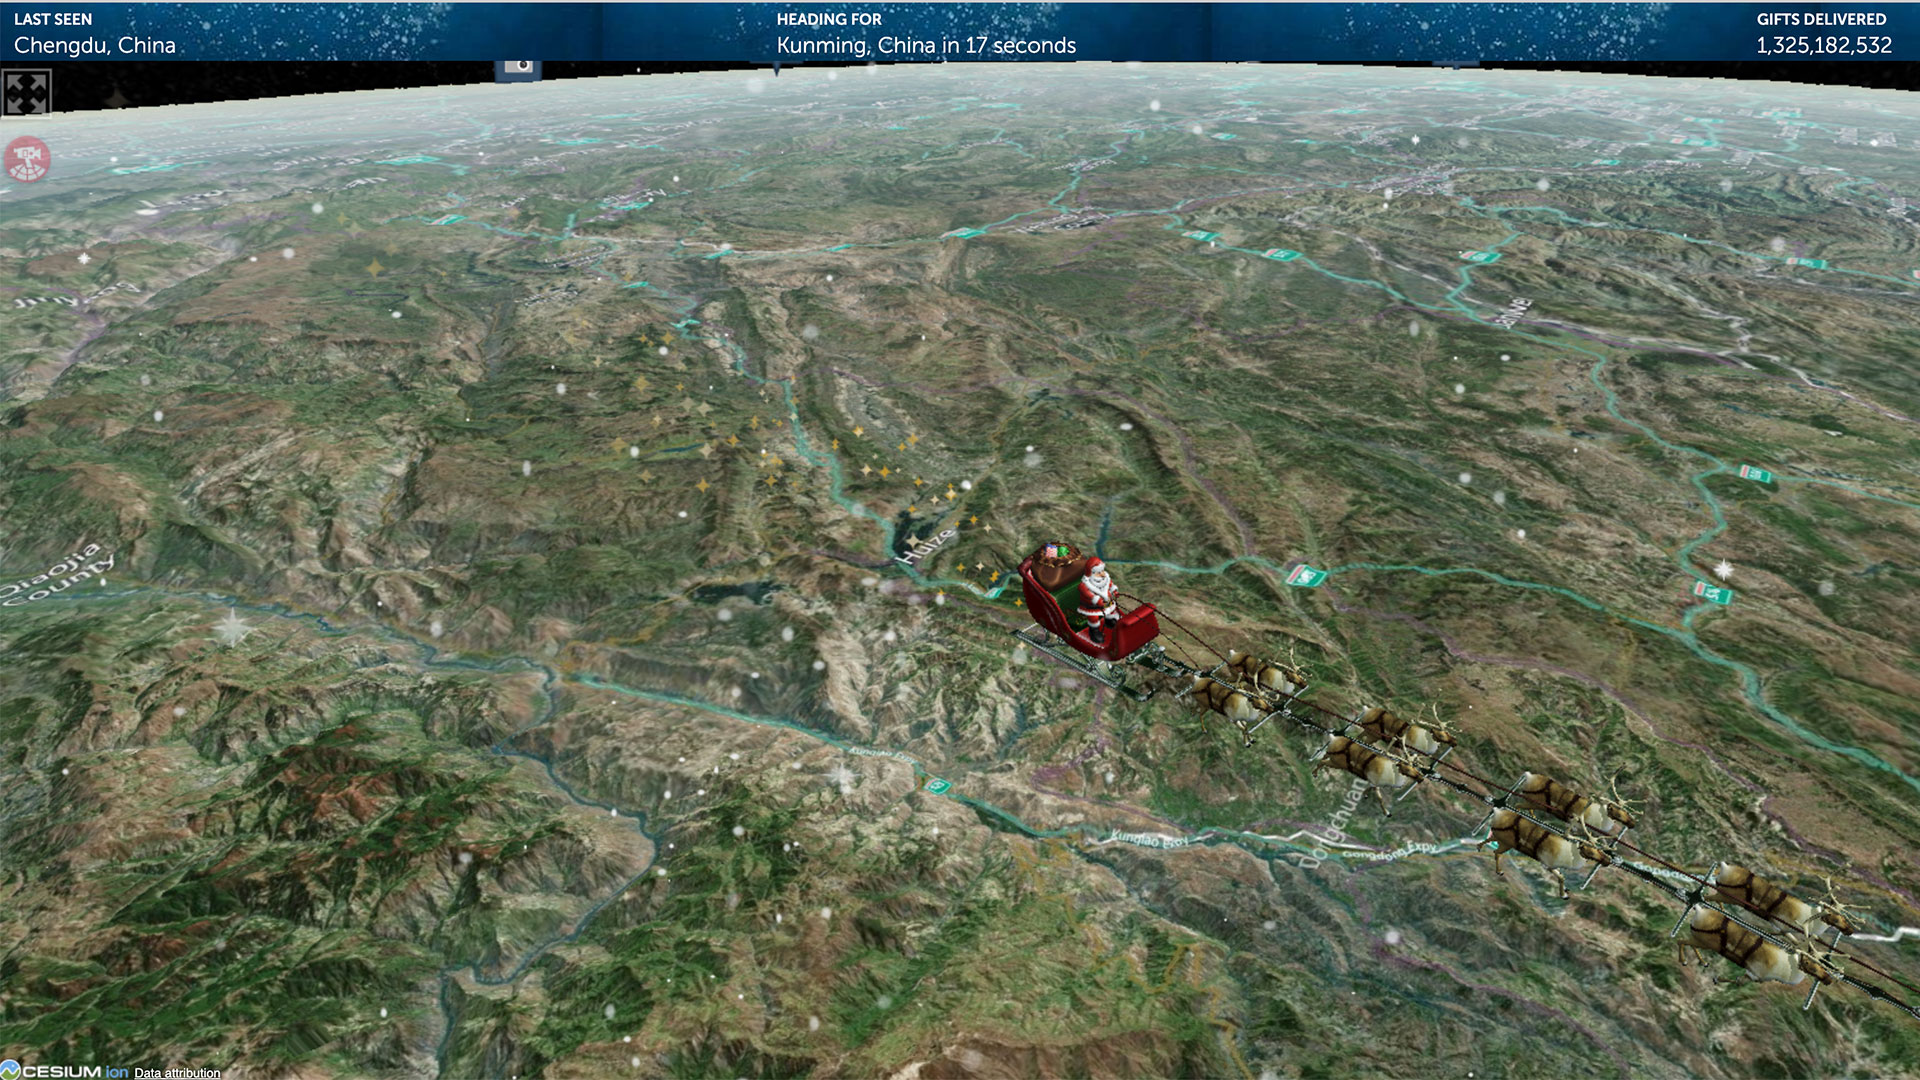 Santa over China on the NORAD Santa tracker